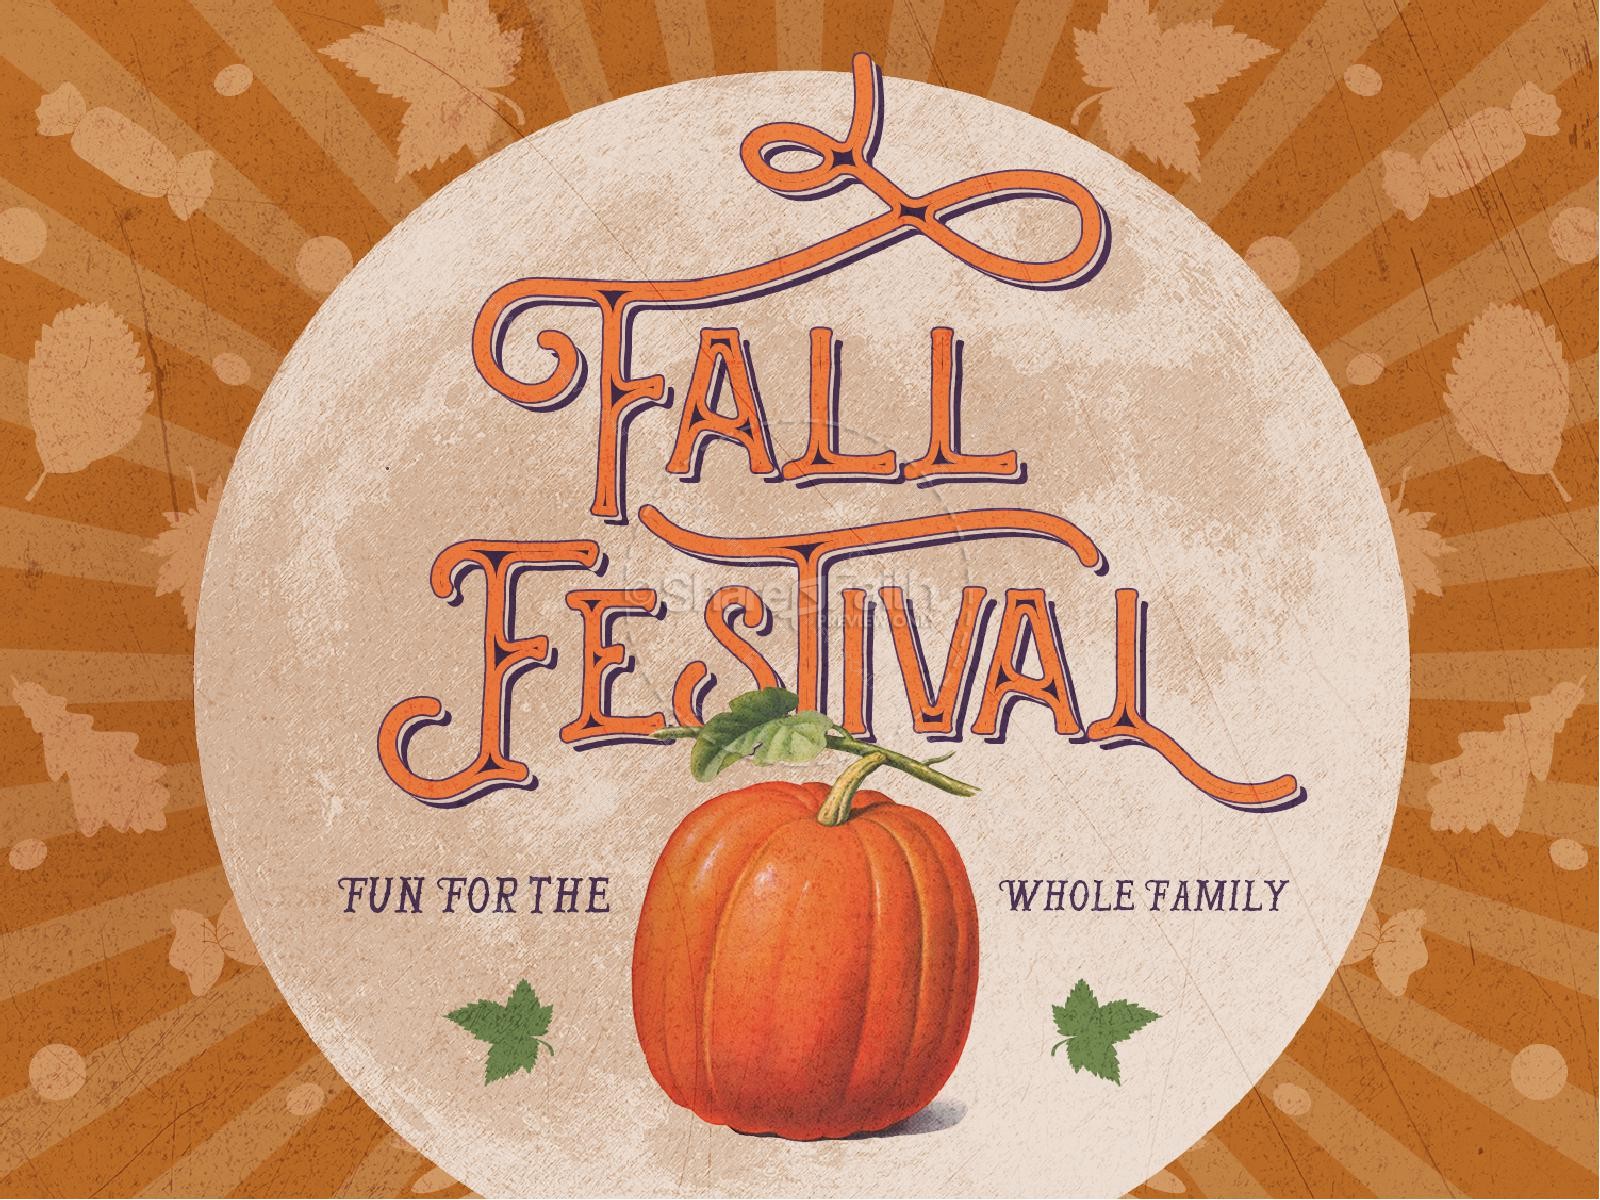 Fall Festival Pumpkin Church Graphic